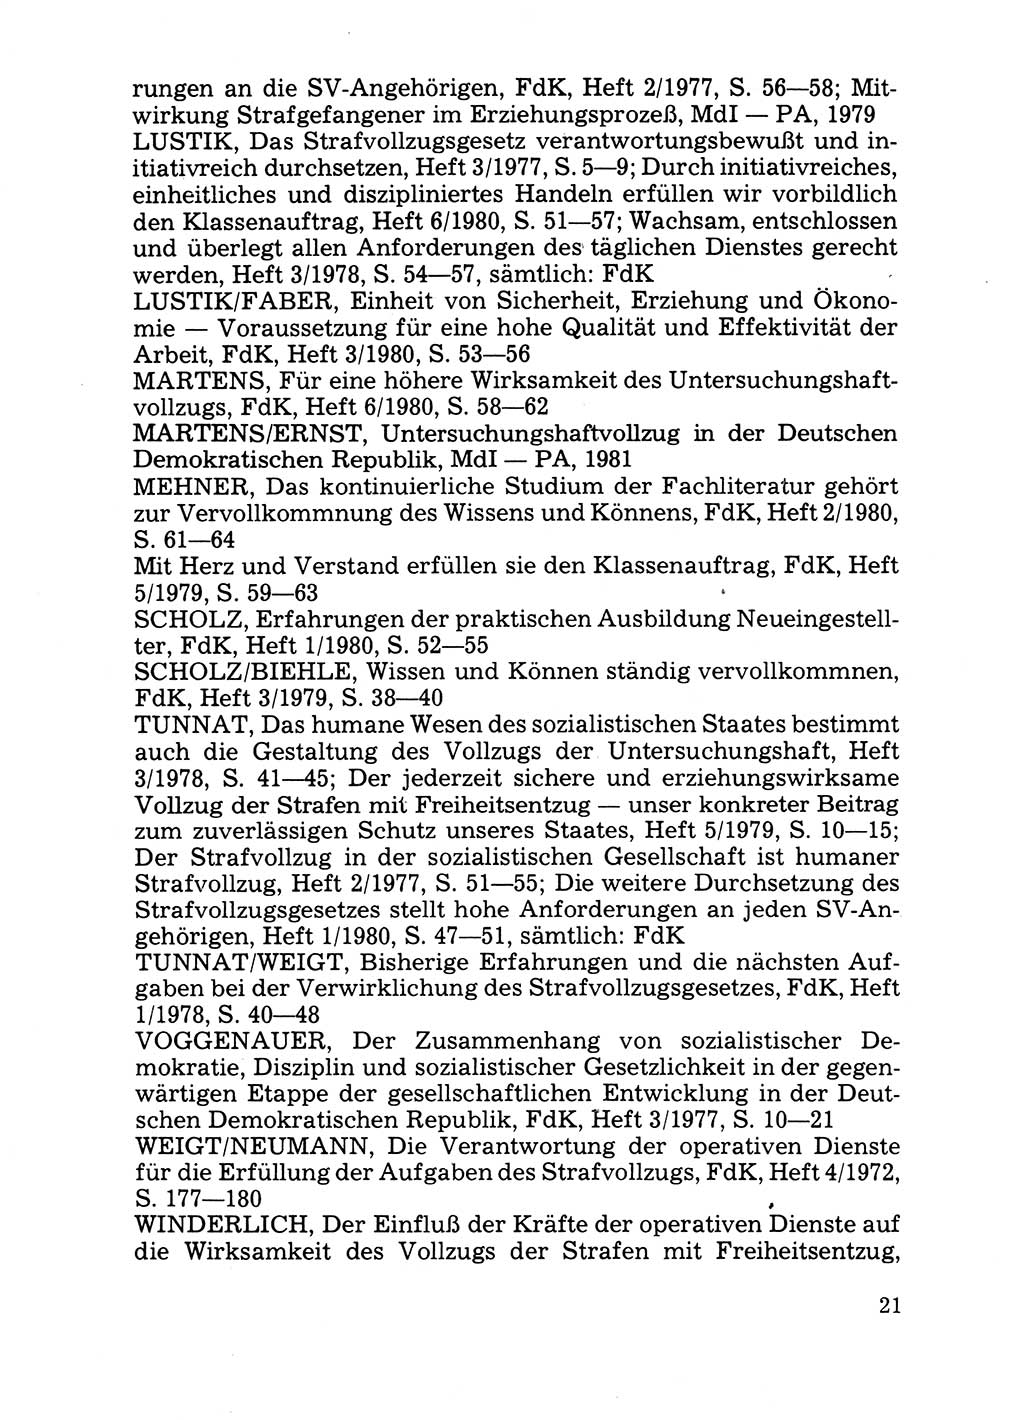 Handbuch für operative Dienste, Abteilung Strafvollzug (SV) [Ministerium des Innern (MdI) Deutsche Demokratische Republik (DDR)] 1981, Seite 21 (Hb. op. D. Abt. SV MdI DDR 1981, S. 21)